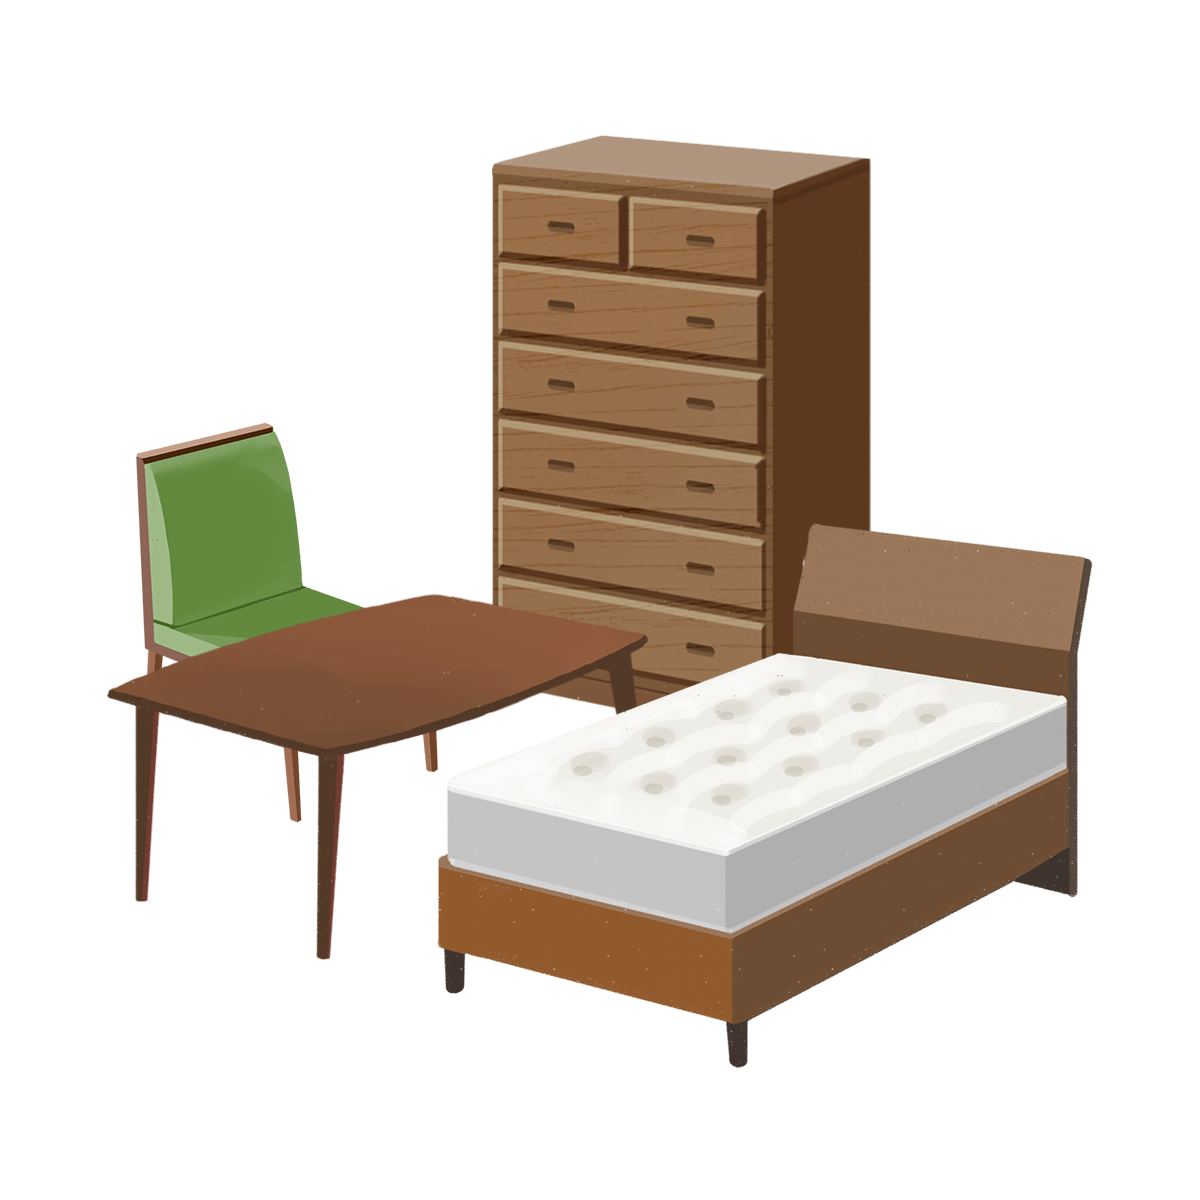 家具セット（椅子・テーブル・ベッド・タンス）のイラスト | エコのモト